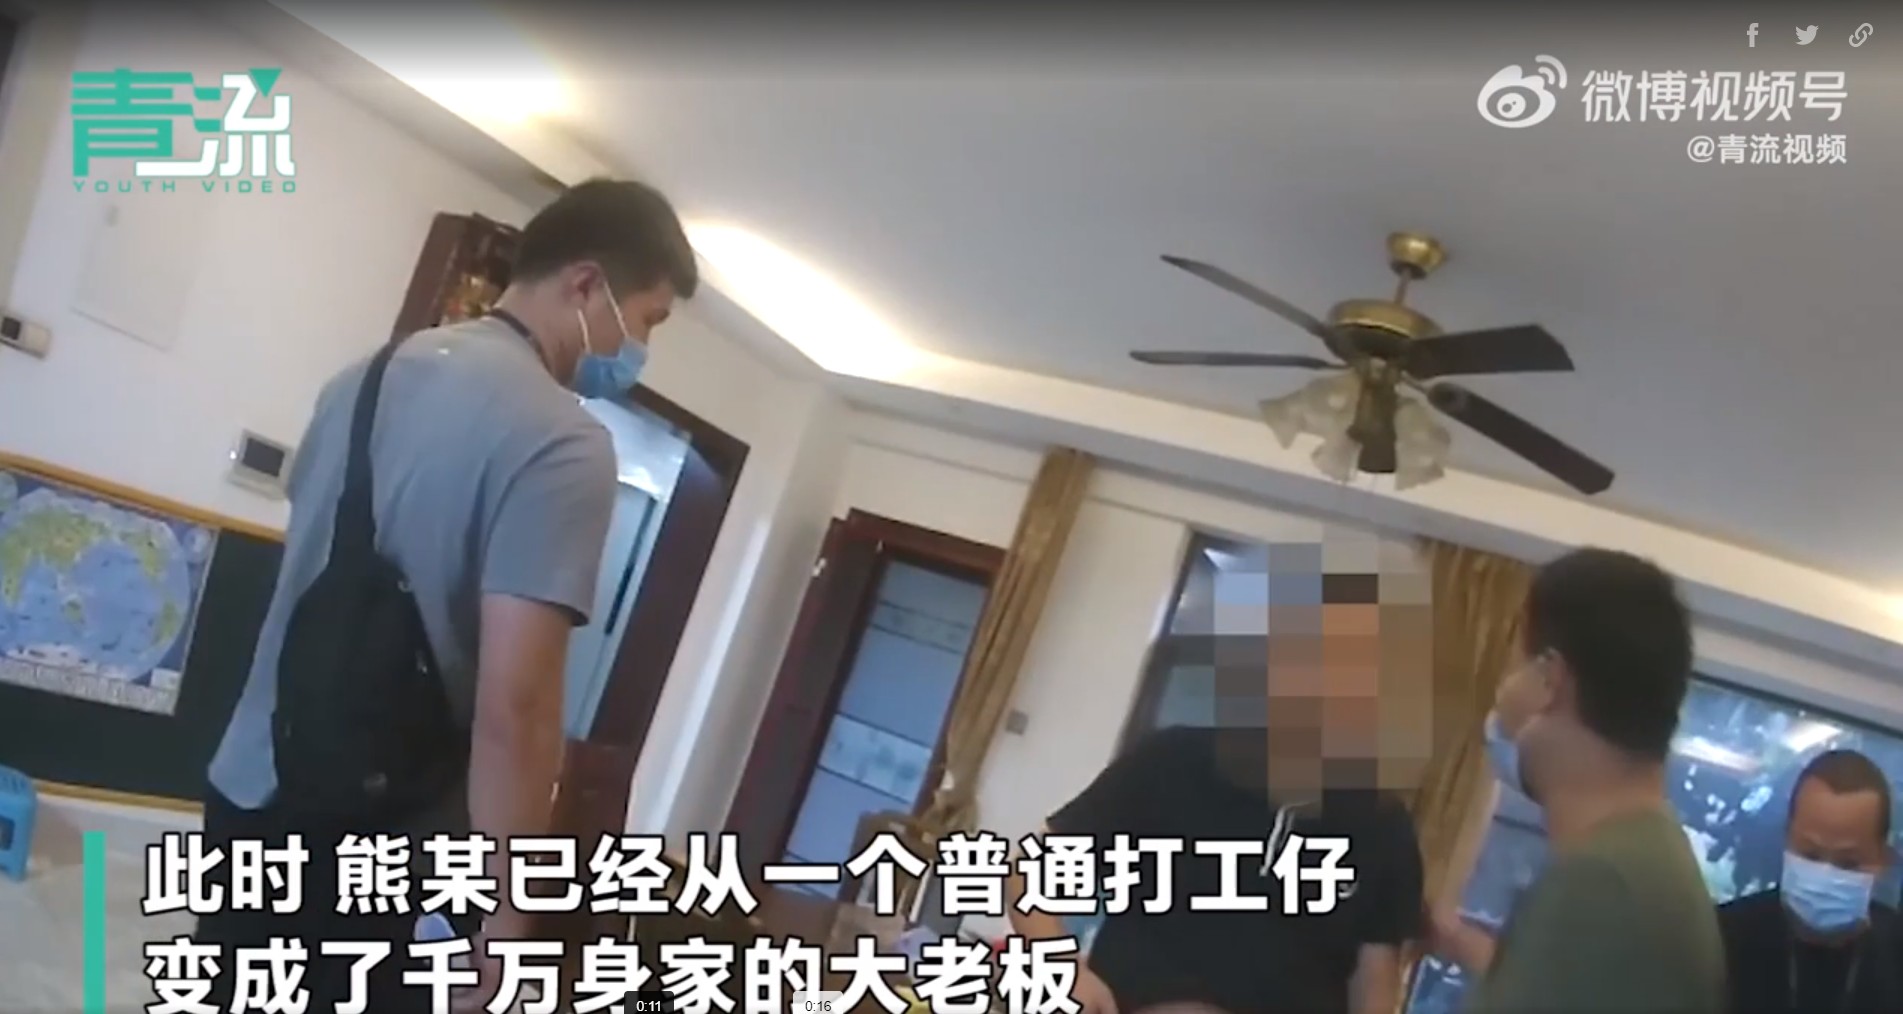 Nghi phạm họ Hùng (người bị làm mờ mặt), bị cảnh sát bắt giữ tại nhà riêng (ảnh: Beijing Youth Daily)